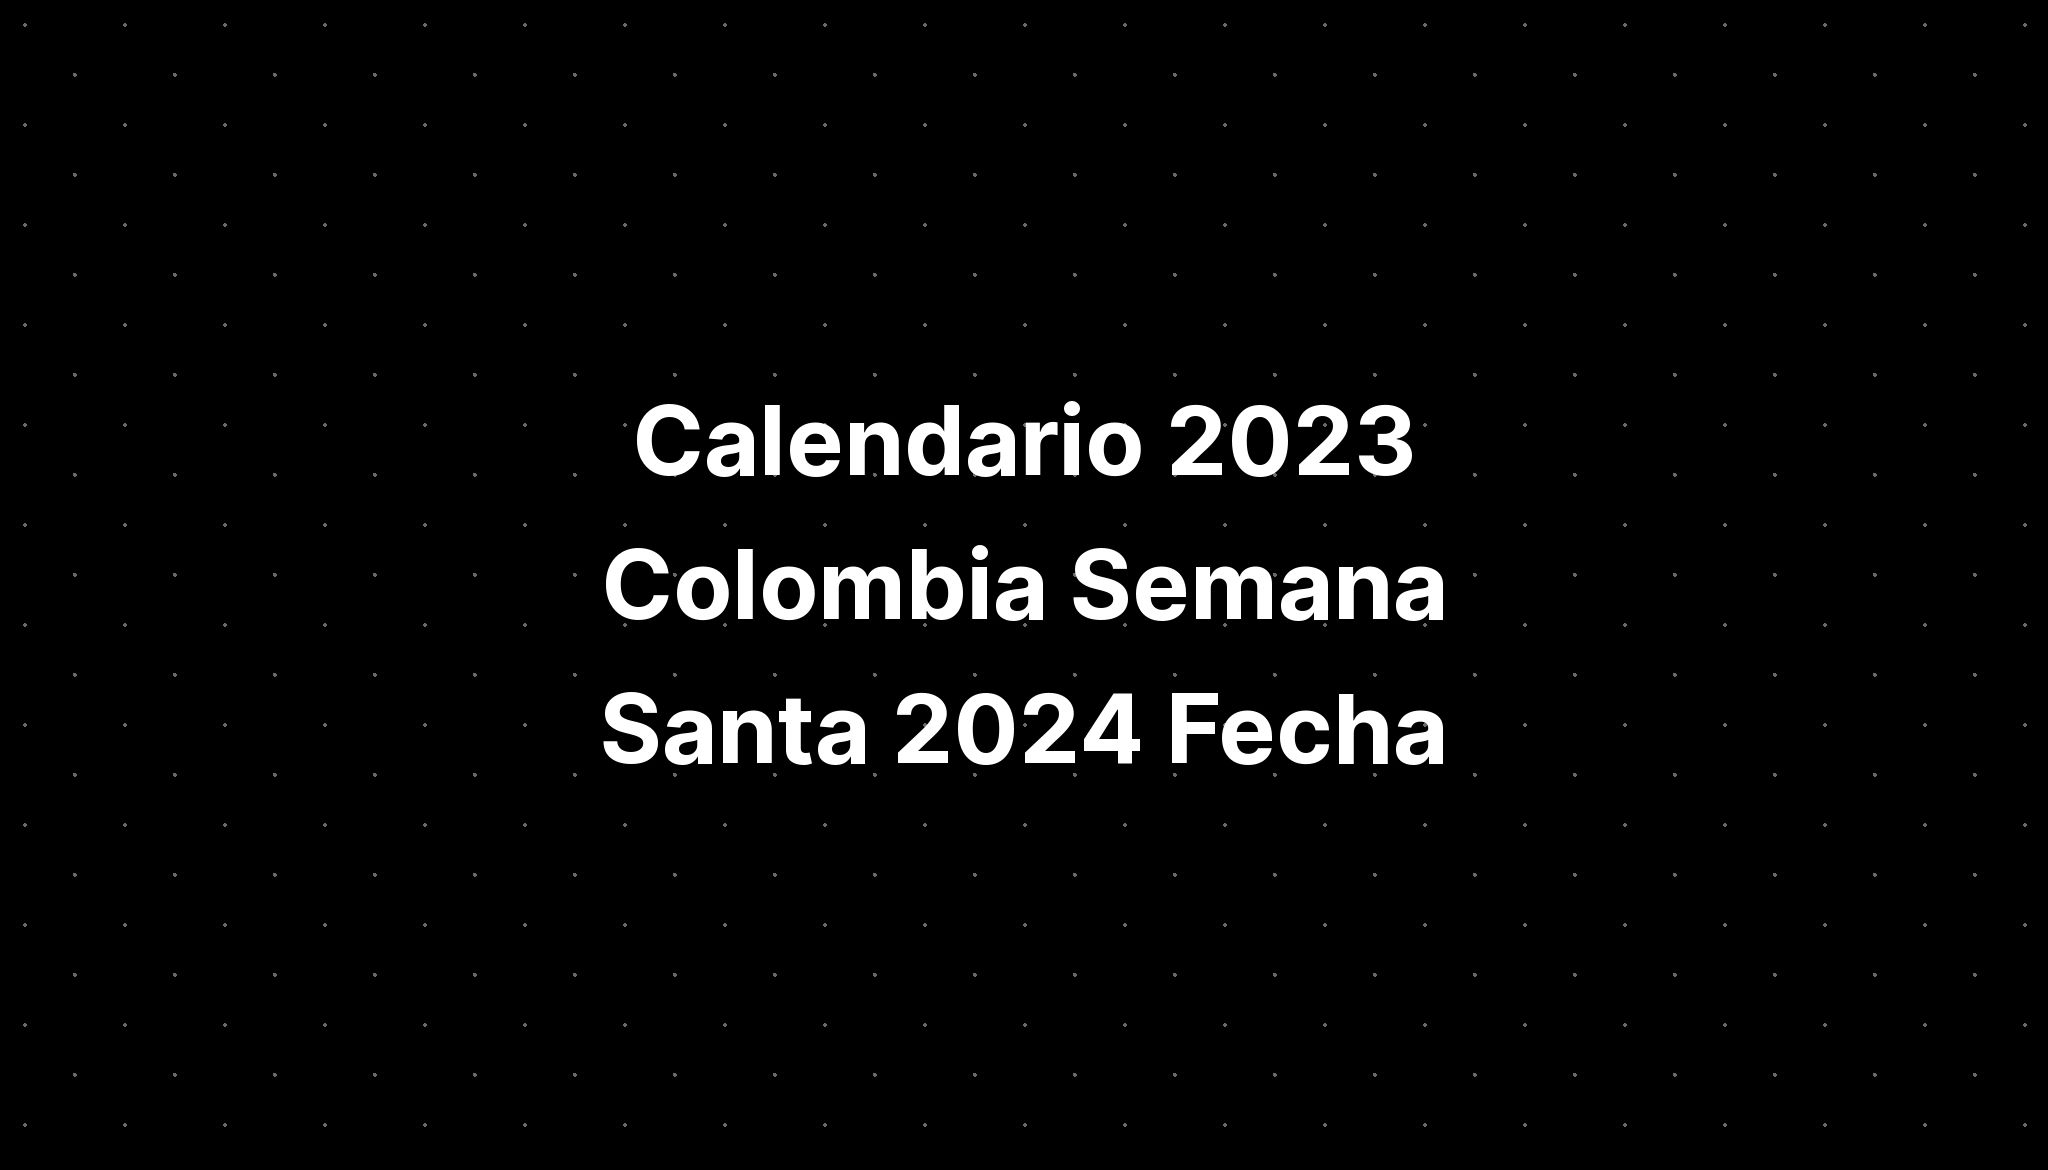 Calendario 2023 Colombia Semana Santa 2024 Fecha IMAGESEE